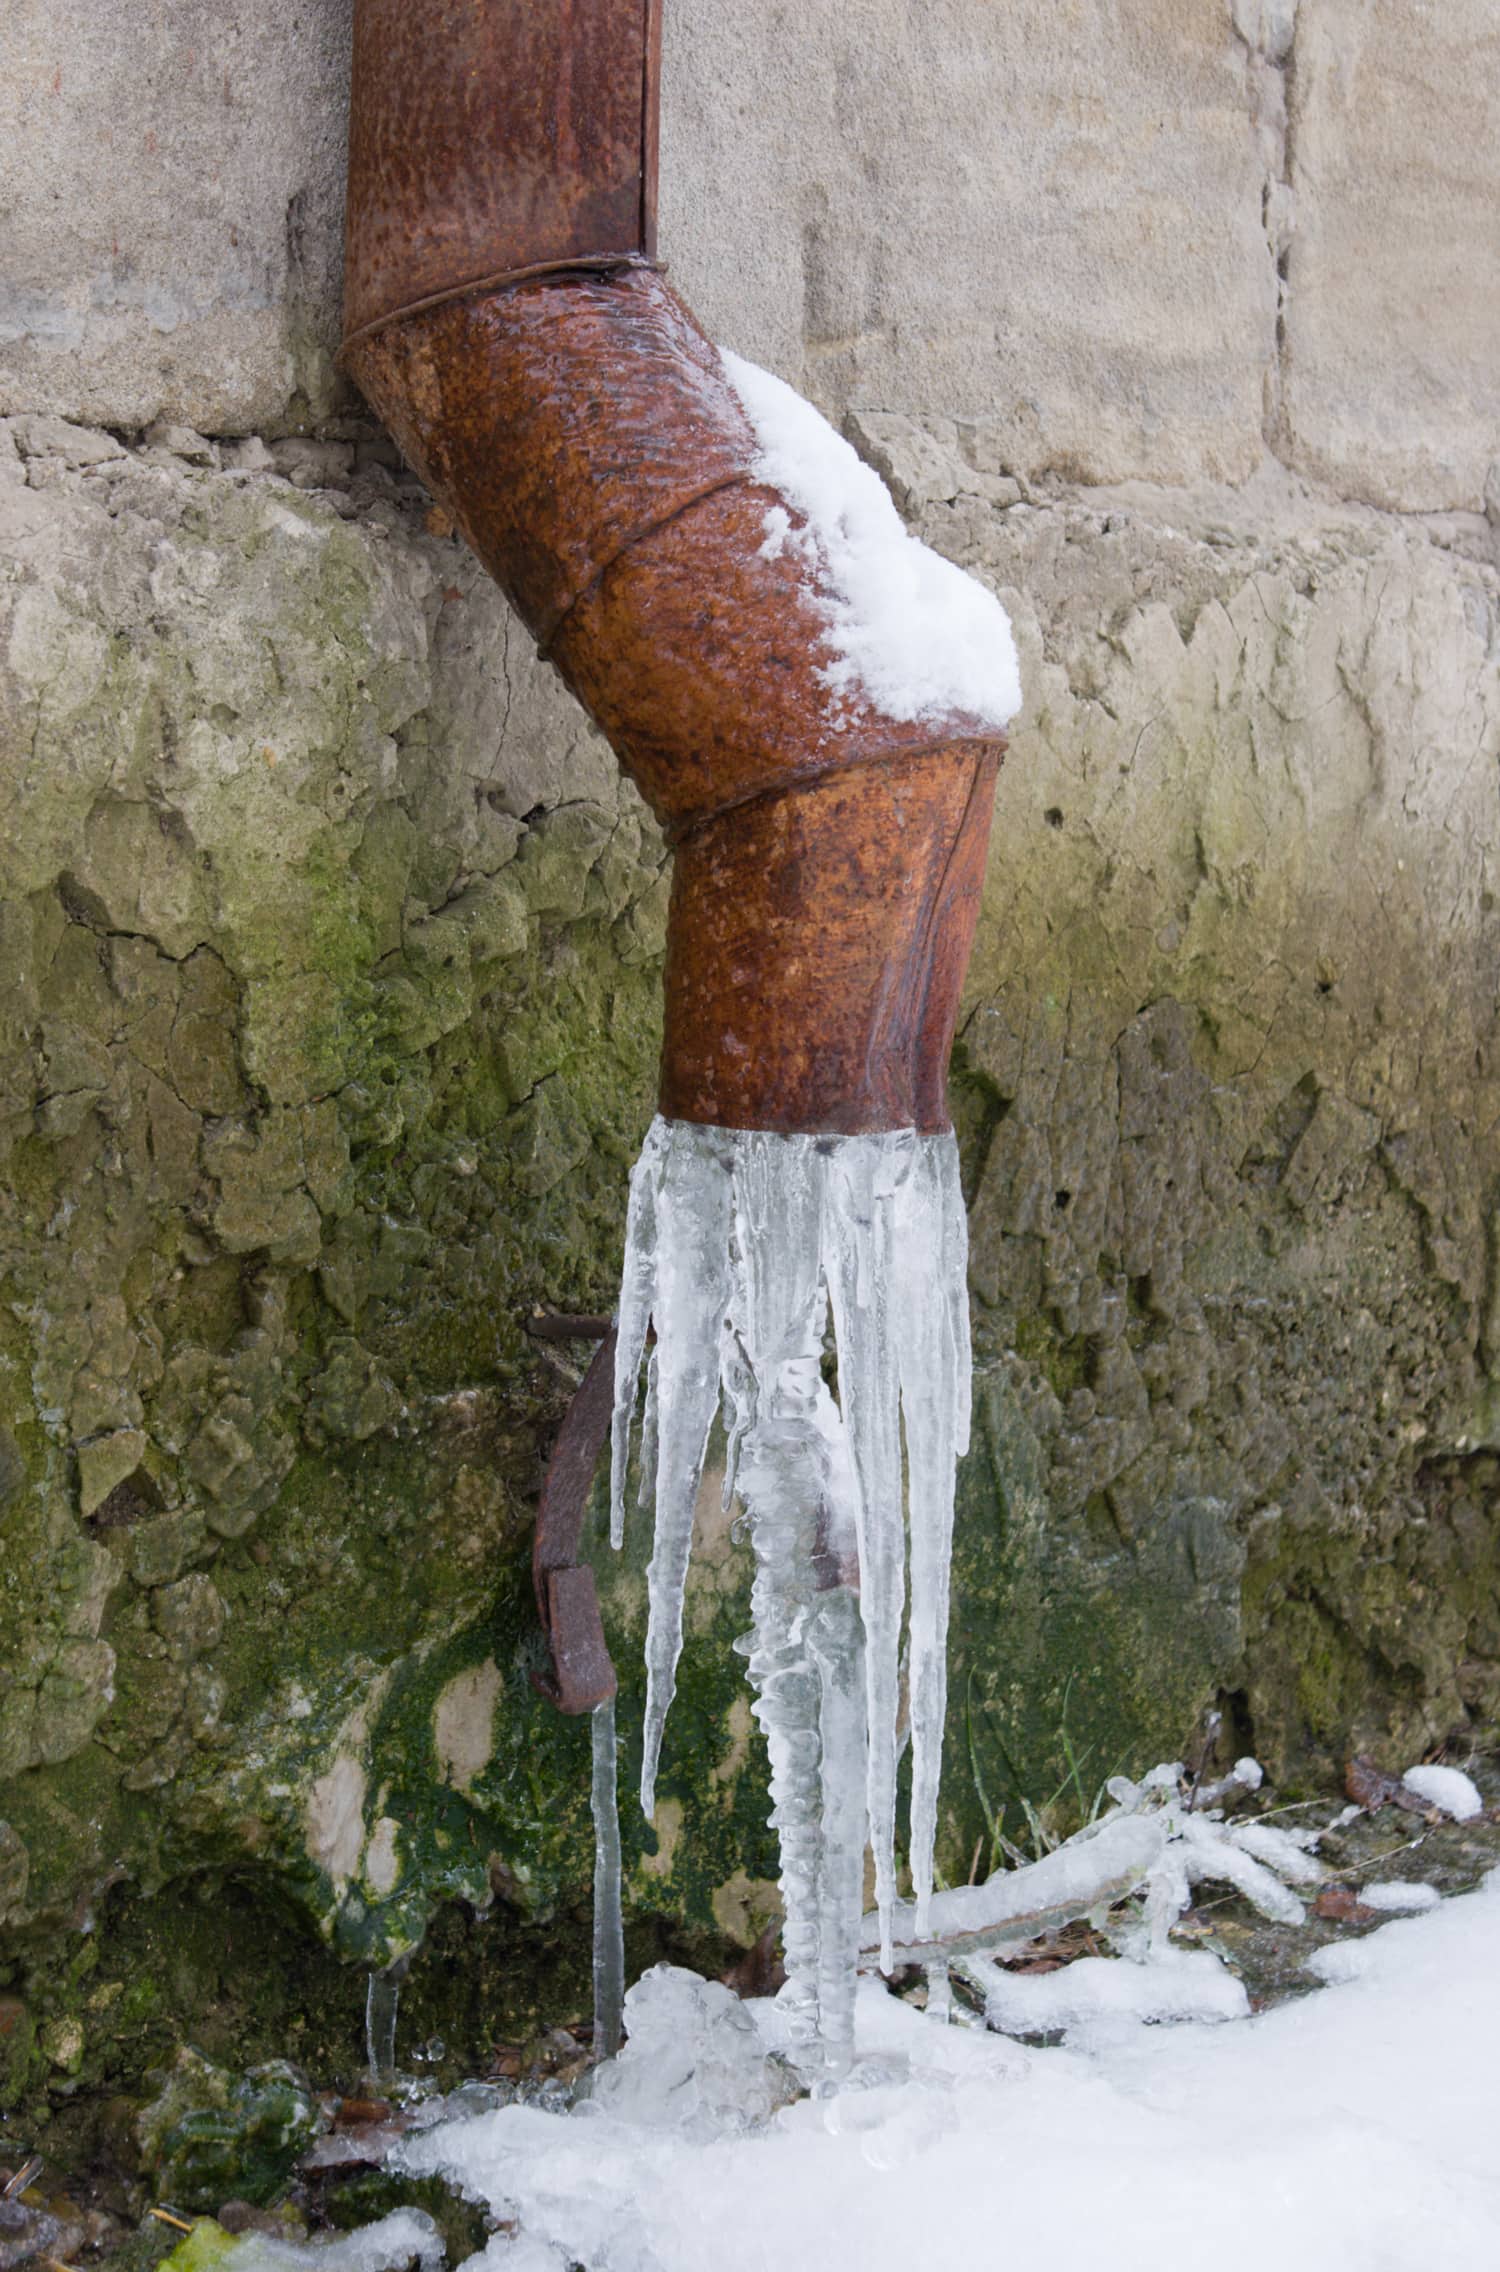 Frozen drainpipe in a wall